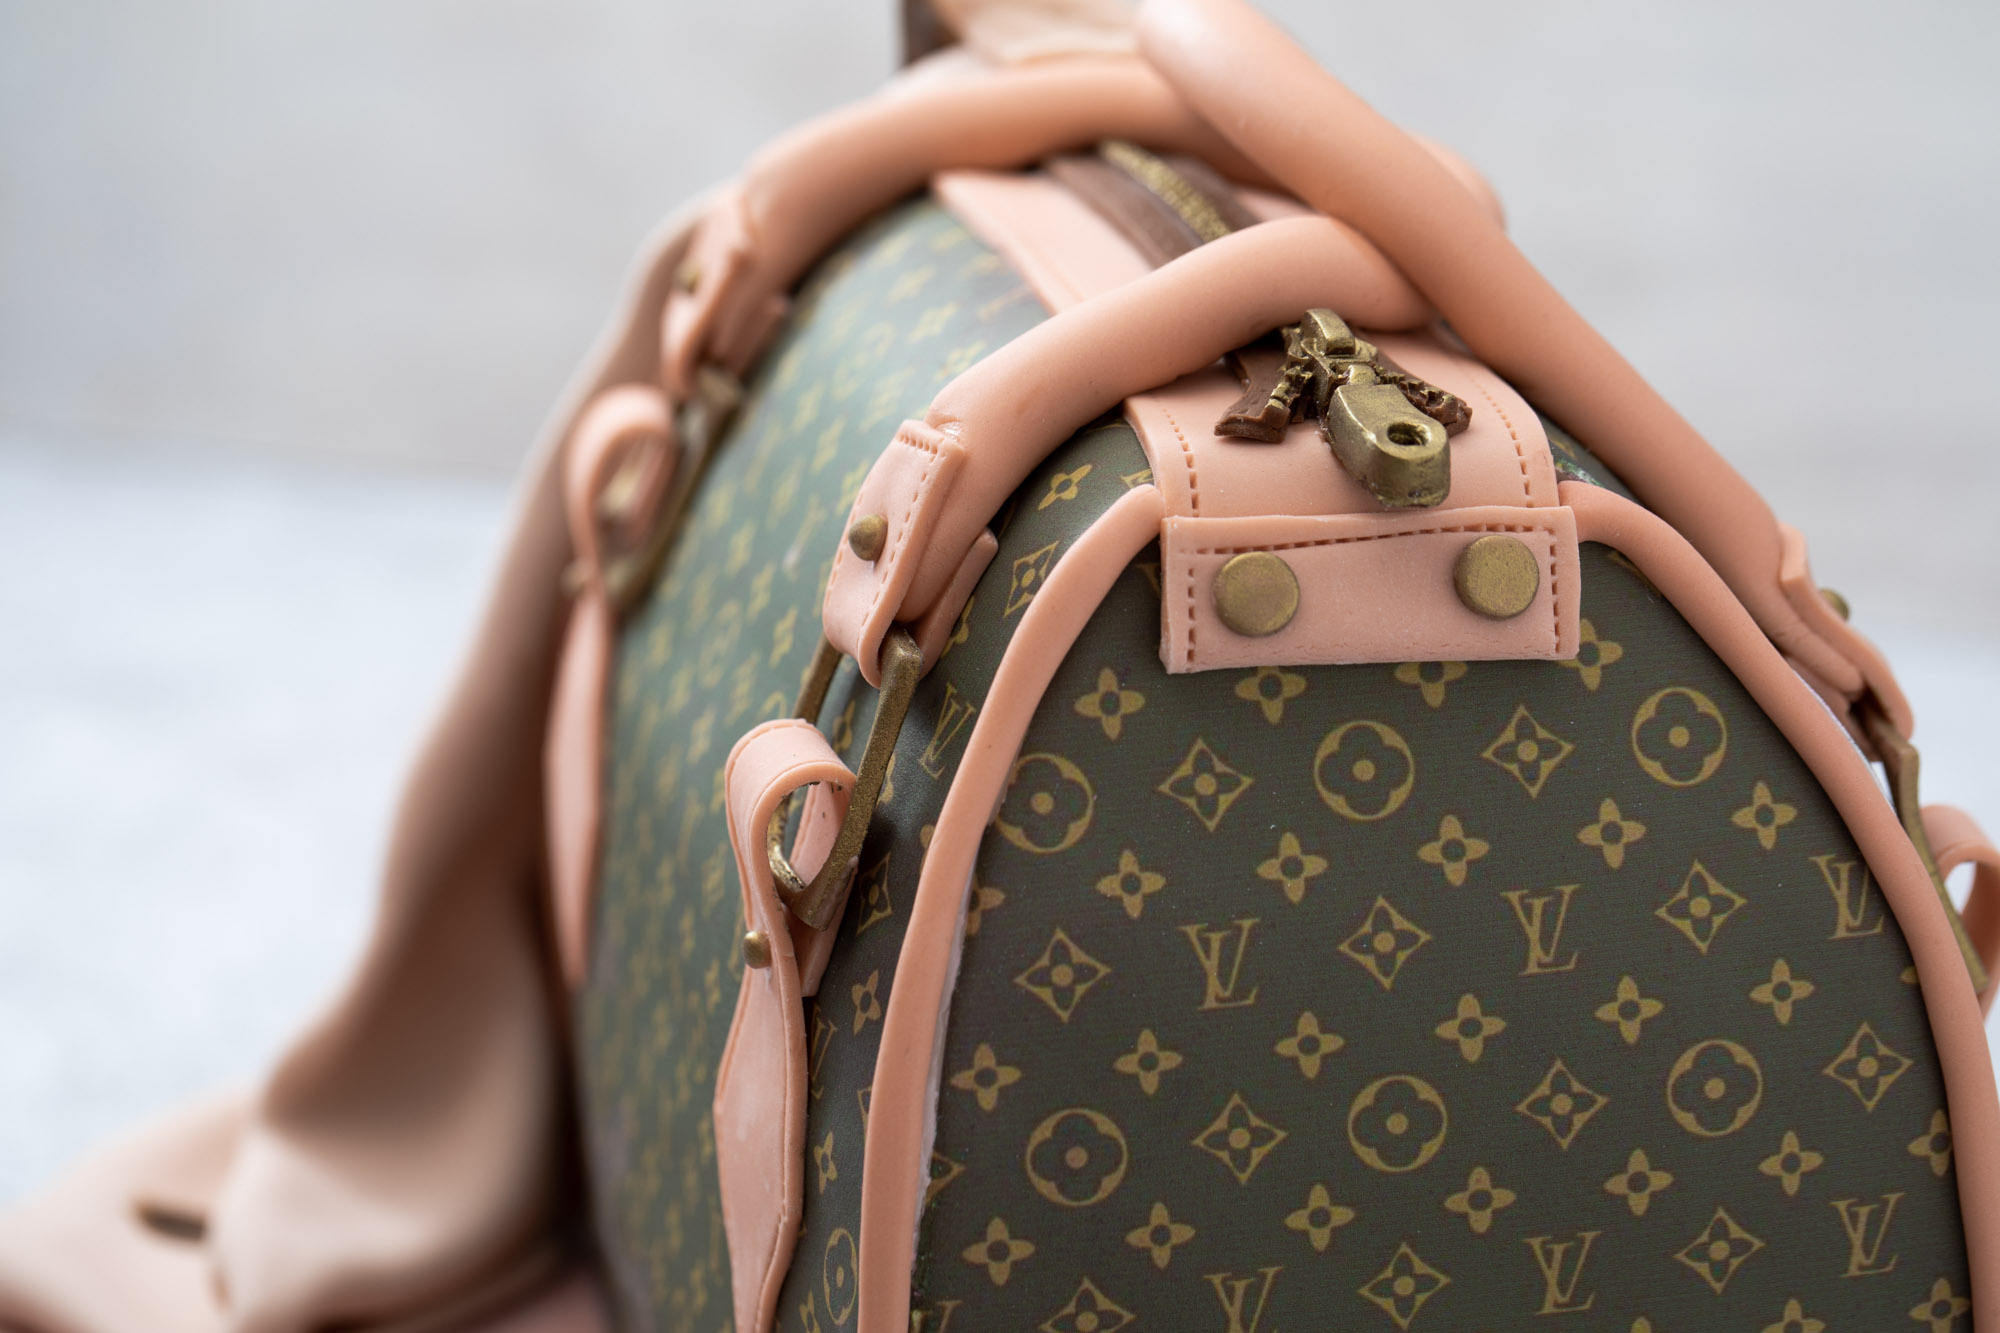 Louis Vuitton Bag, 3-D cake as Vuitton bag. All edible deco…